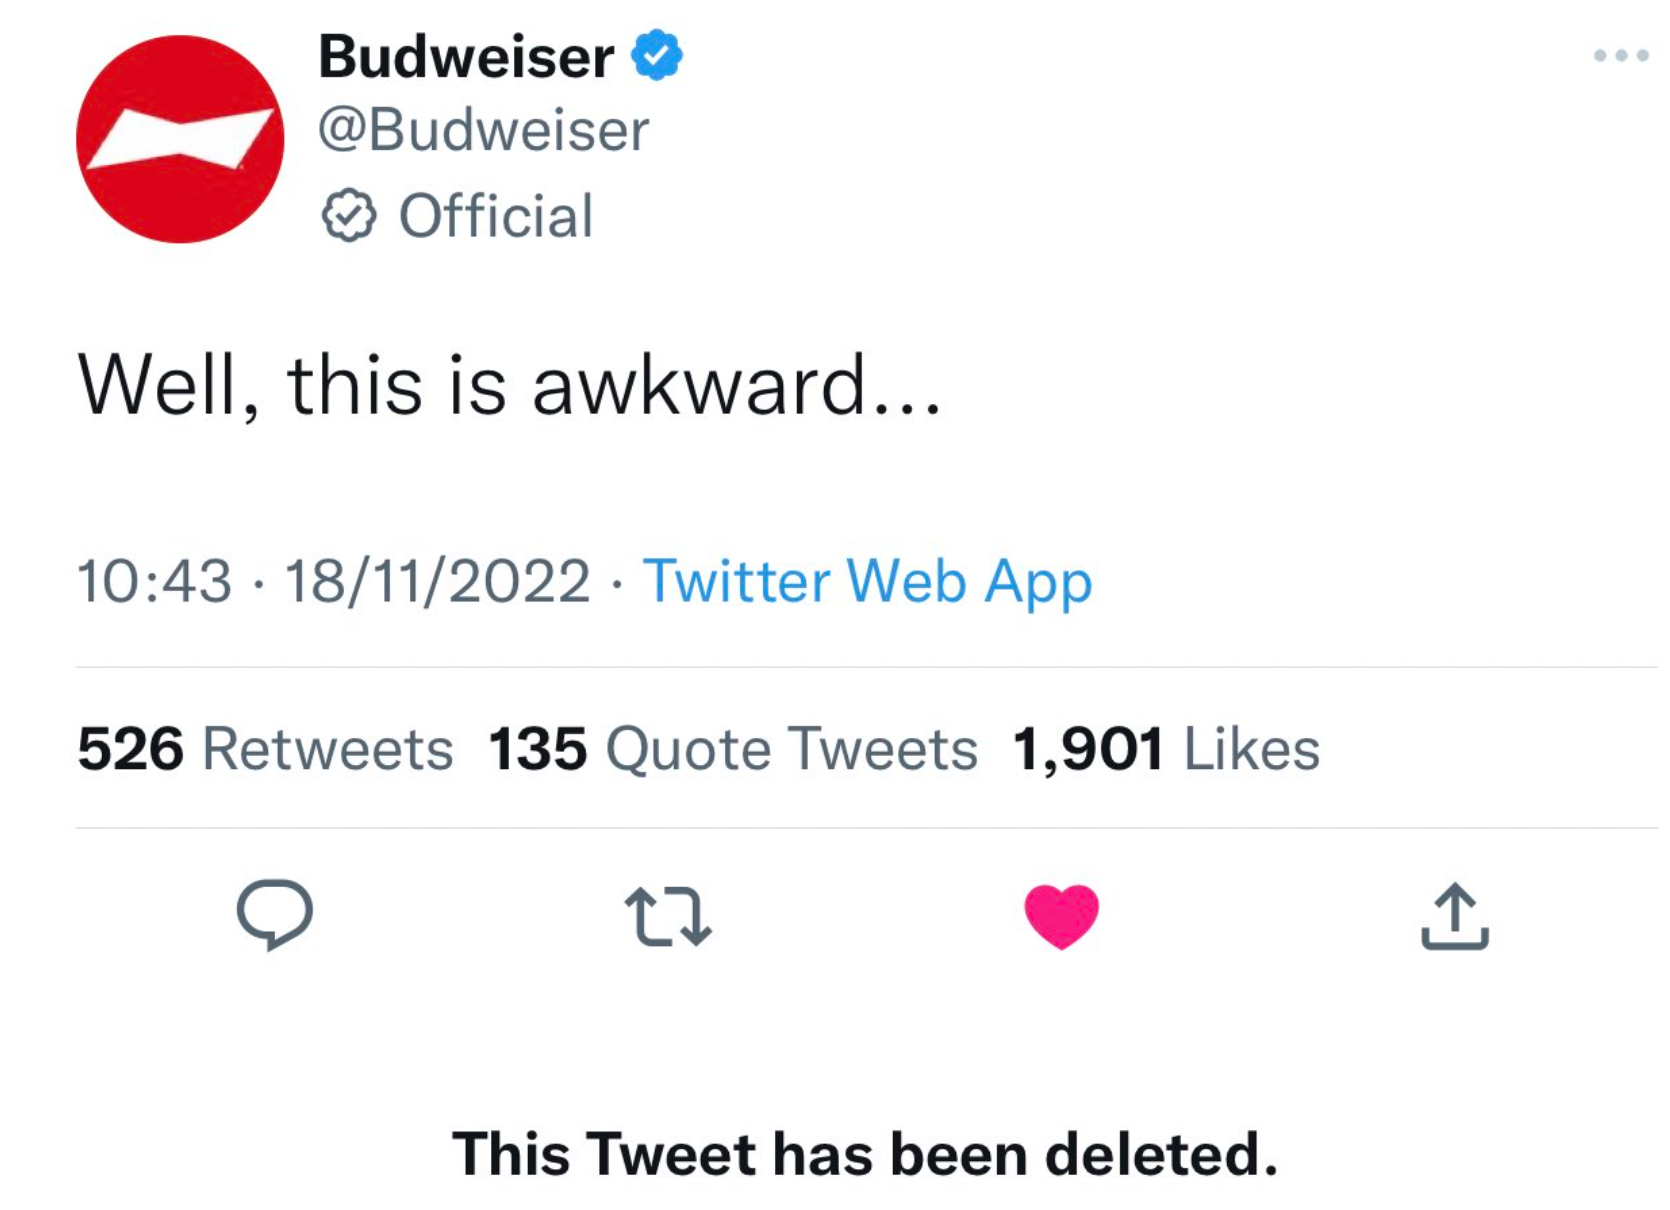 //Budweiser tweet